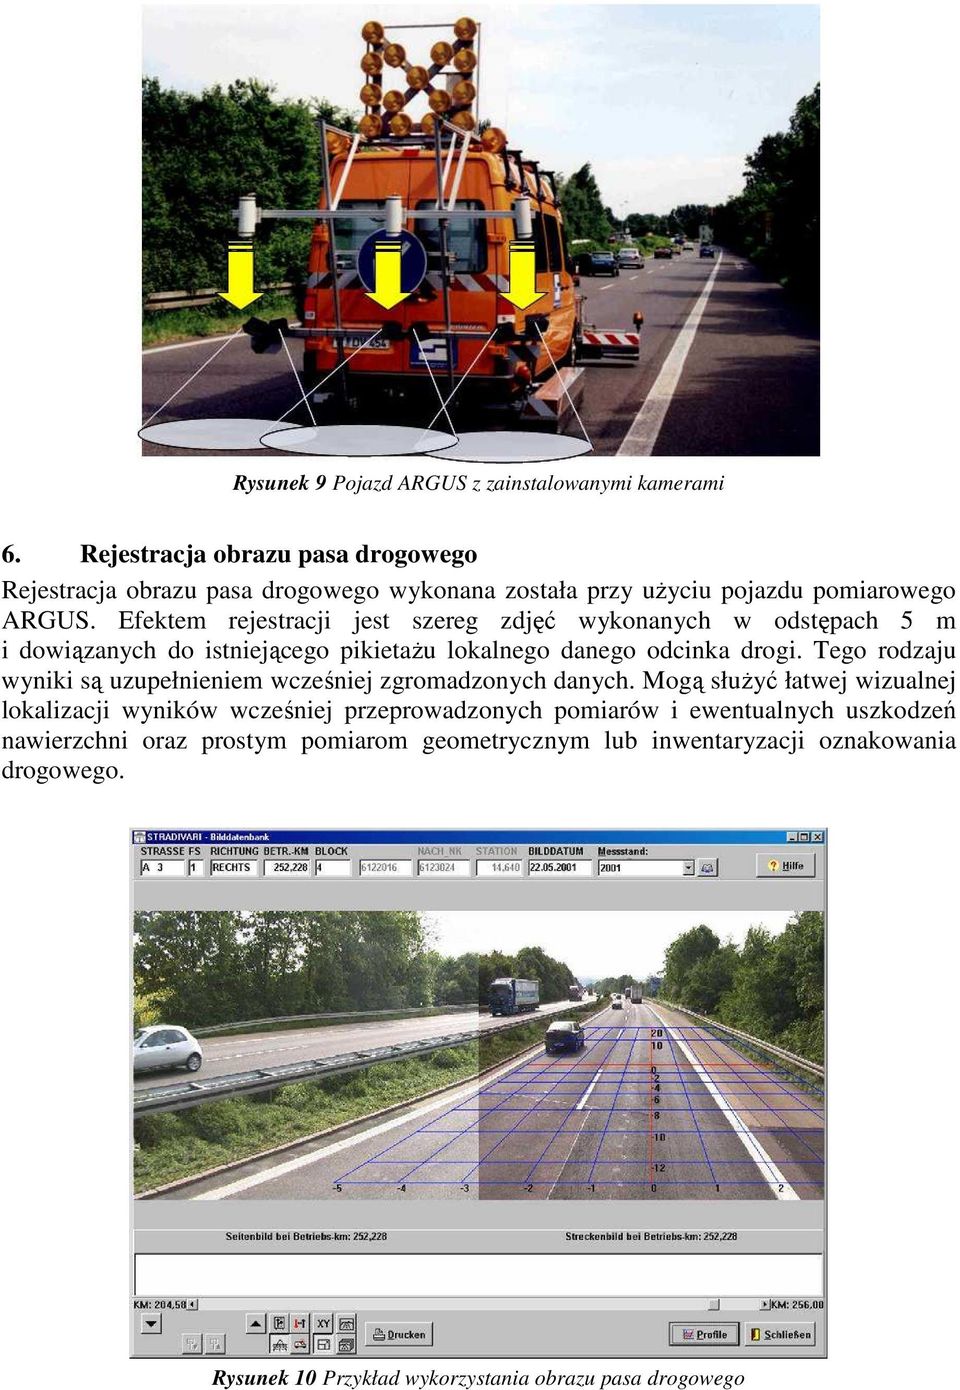 Efektem rejestracji jest szereg zdjęć wykonanych w odstępach 5 m i dowiązanych do istniejącego pikietaŝu lokalnego danego odcinka drogi.